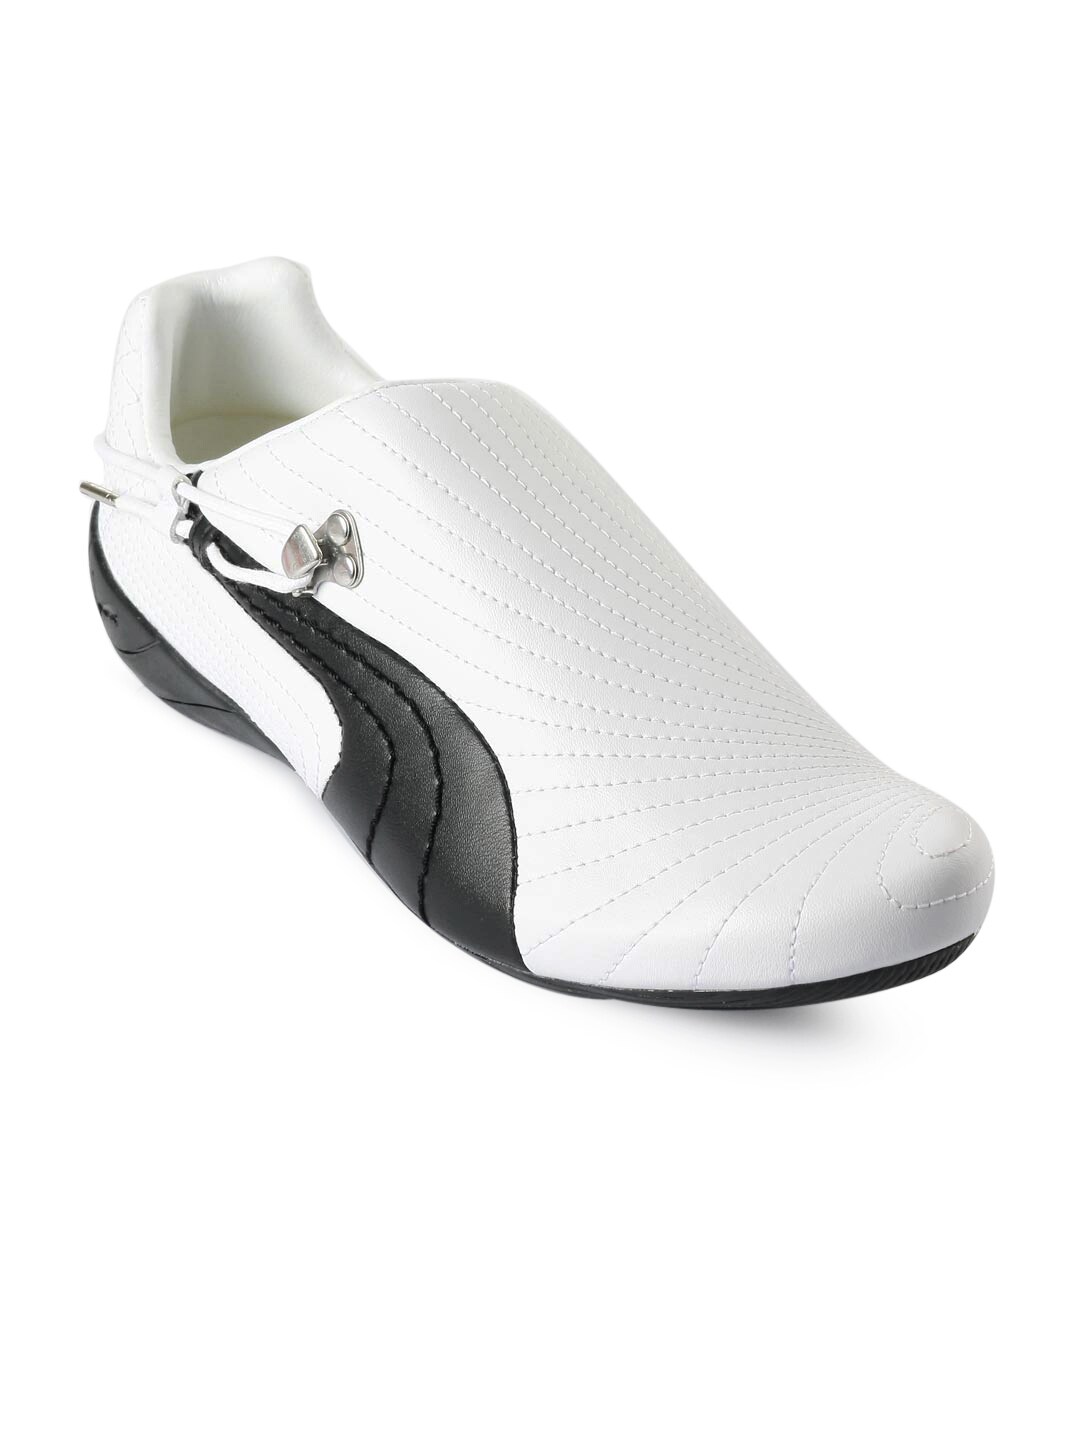 Puma Men Budoka White Sports Shoes